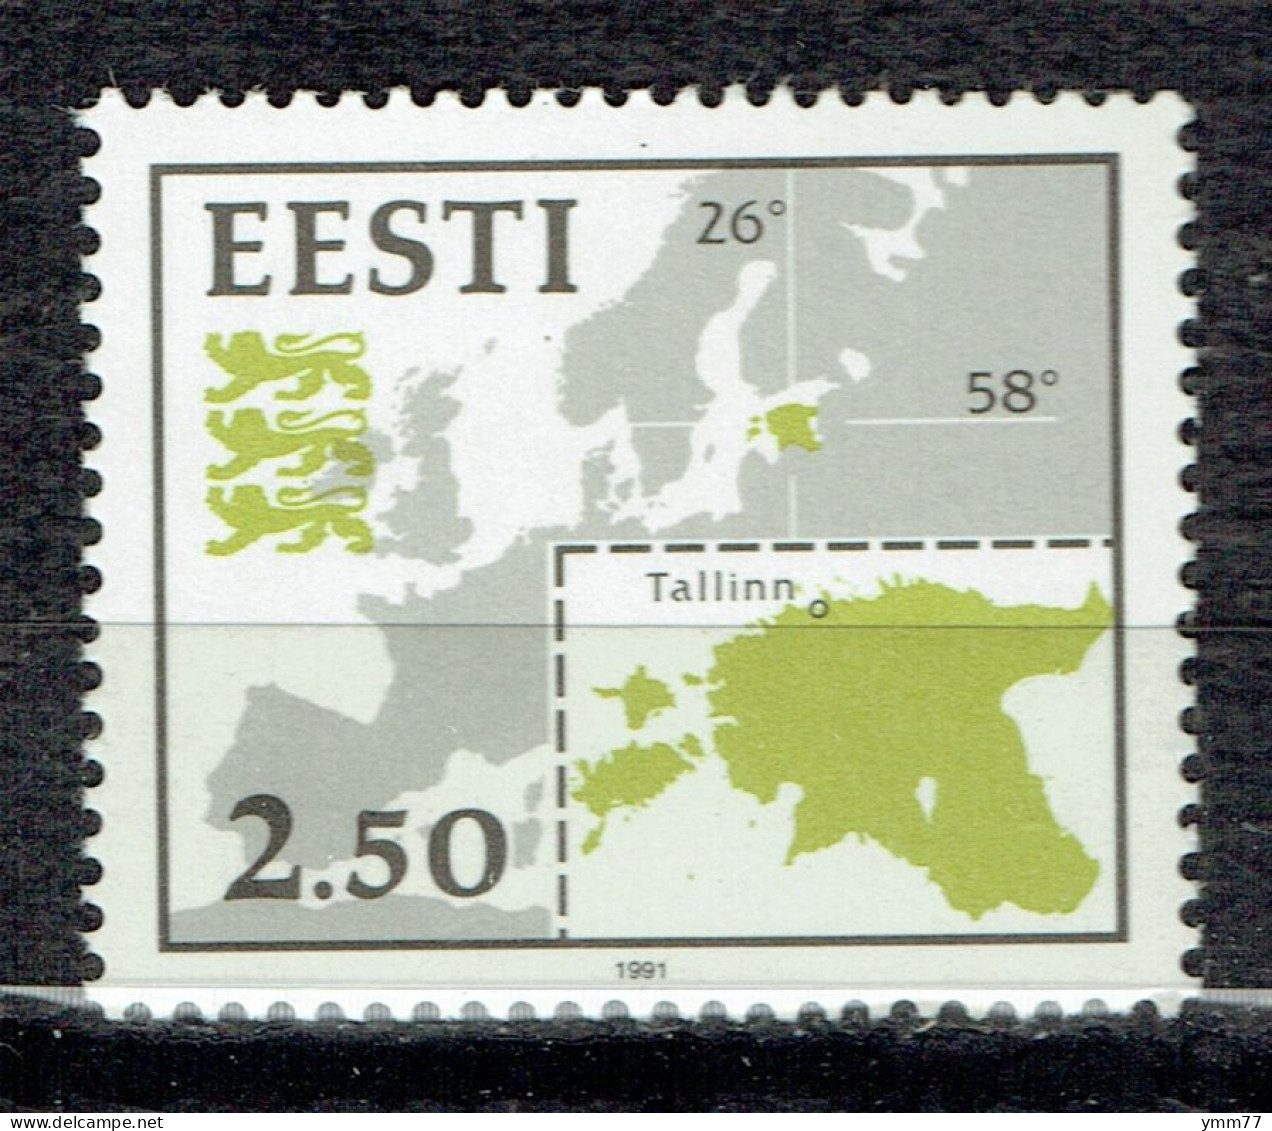 Symboles Nationaux : Carte De L'Europe Et De L'Estonie - Estonie